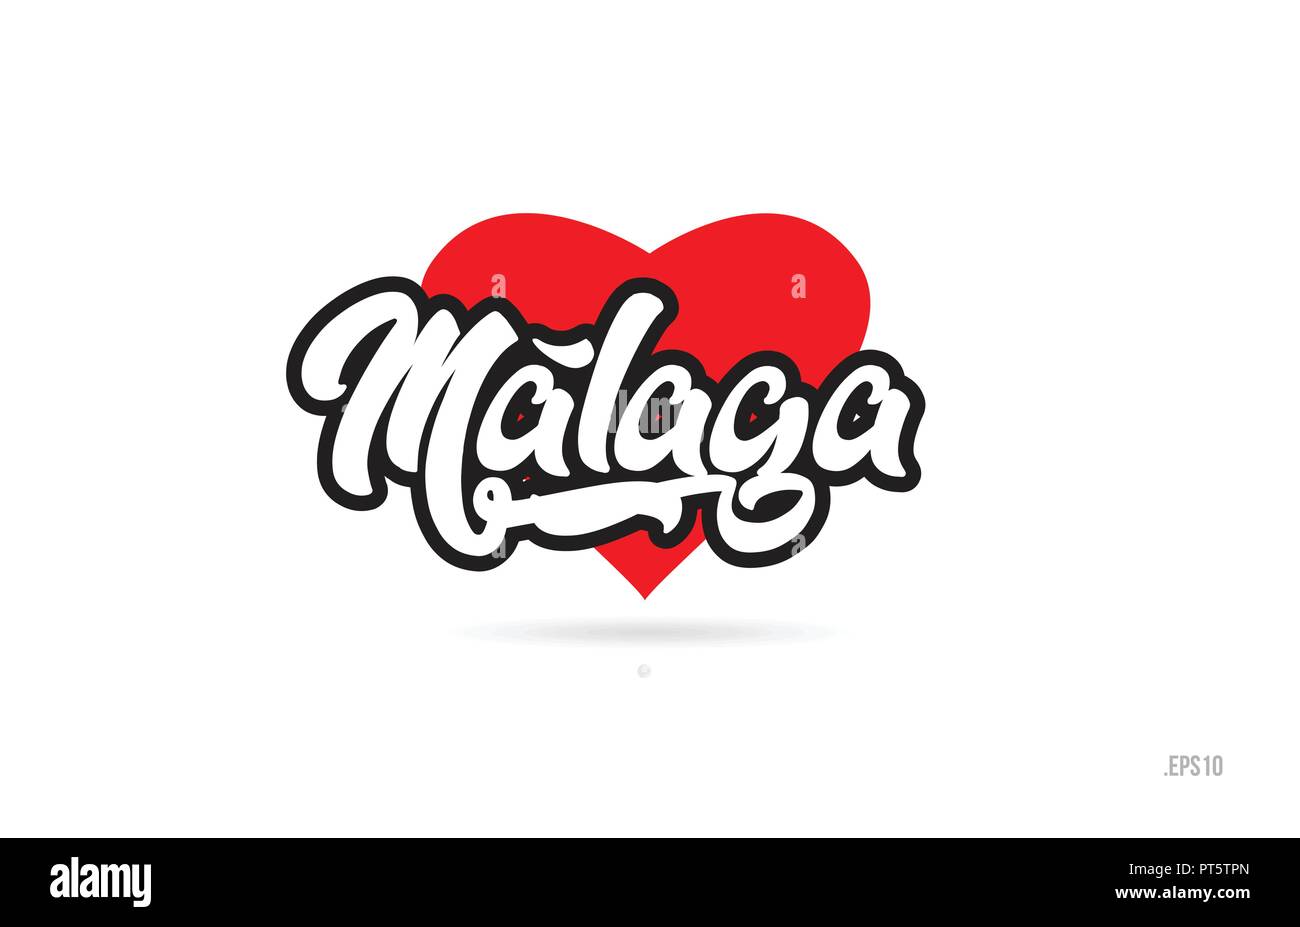 Malaga Stadt text Design mit roten Herzen typografischen Icon Design Geeignet für touristische Förderung Stock Vektor